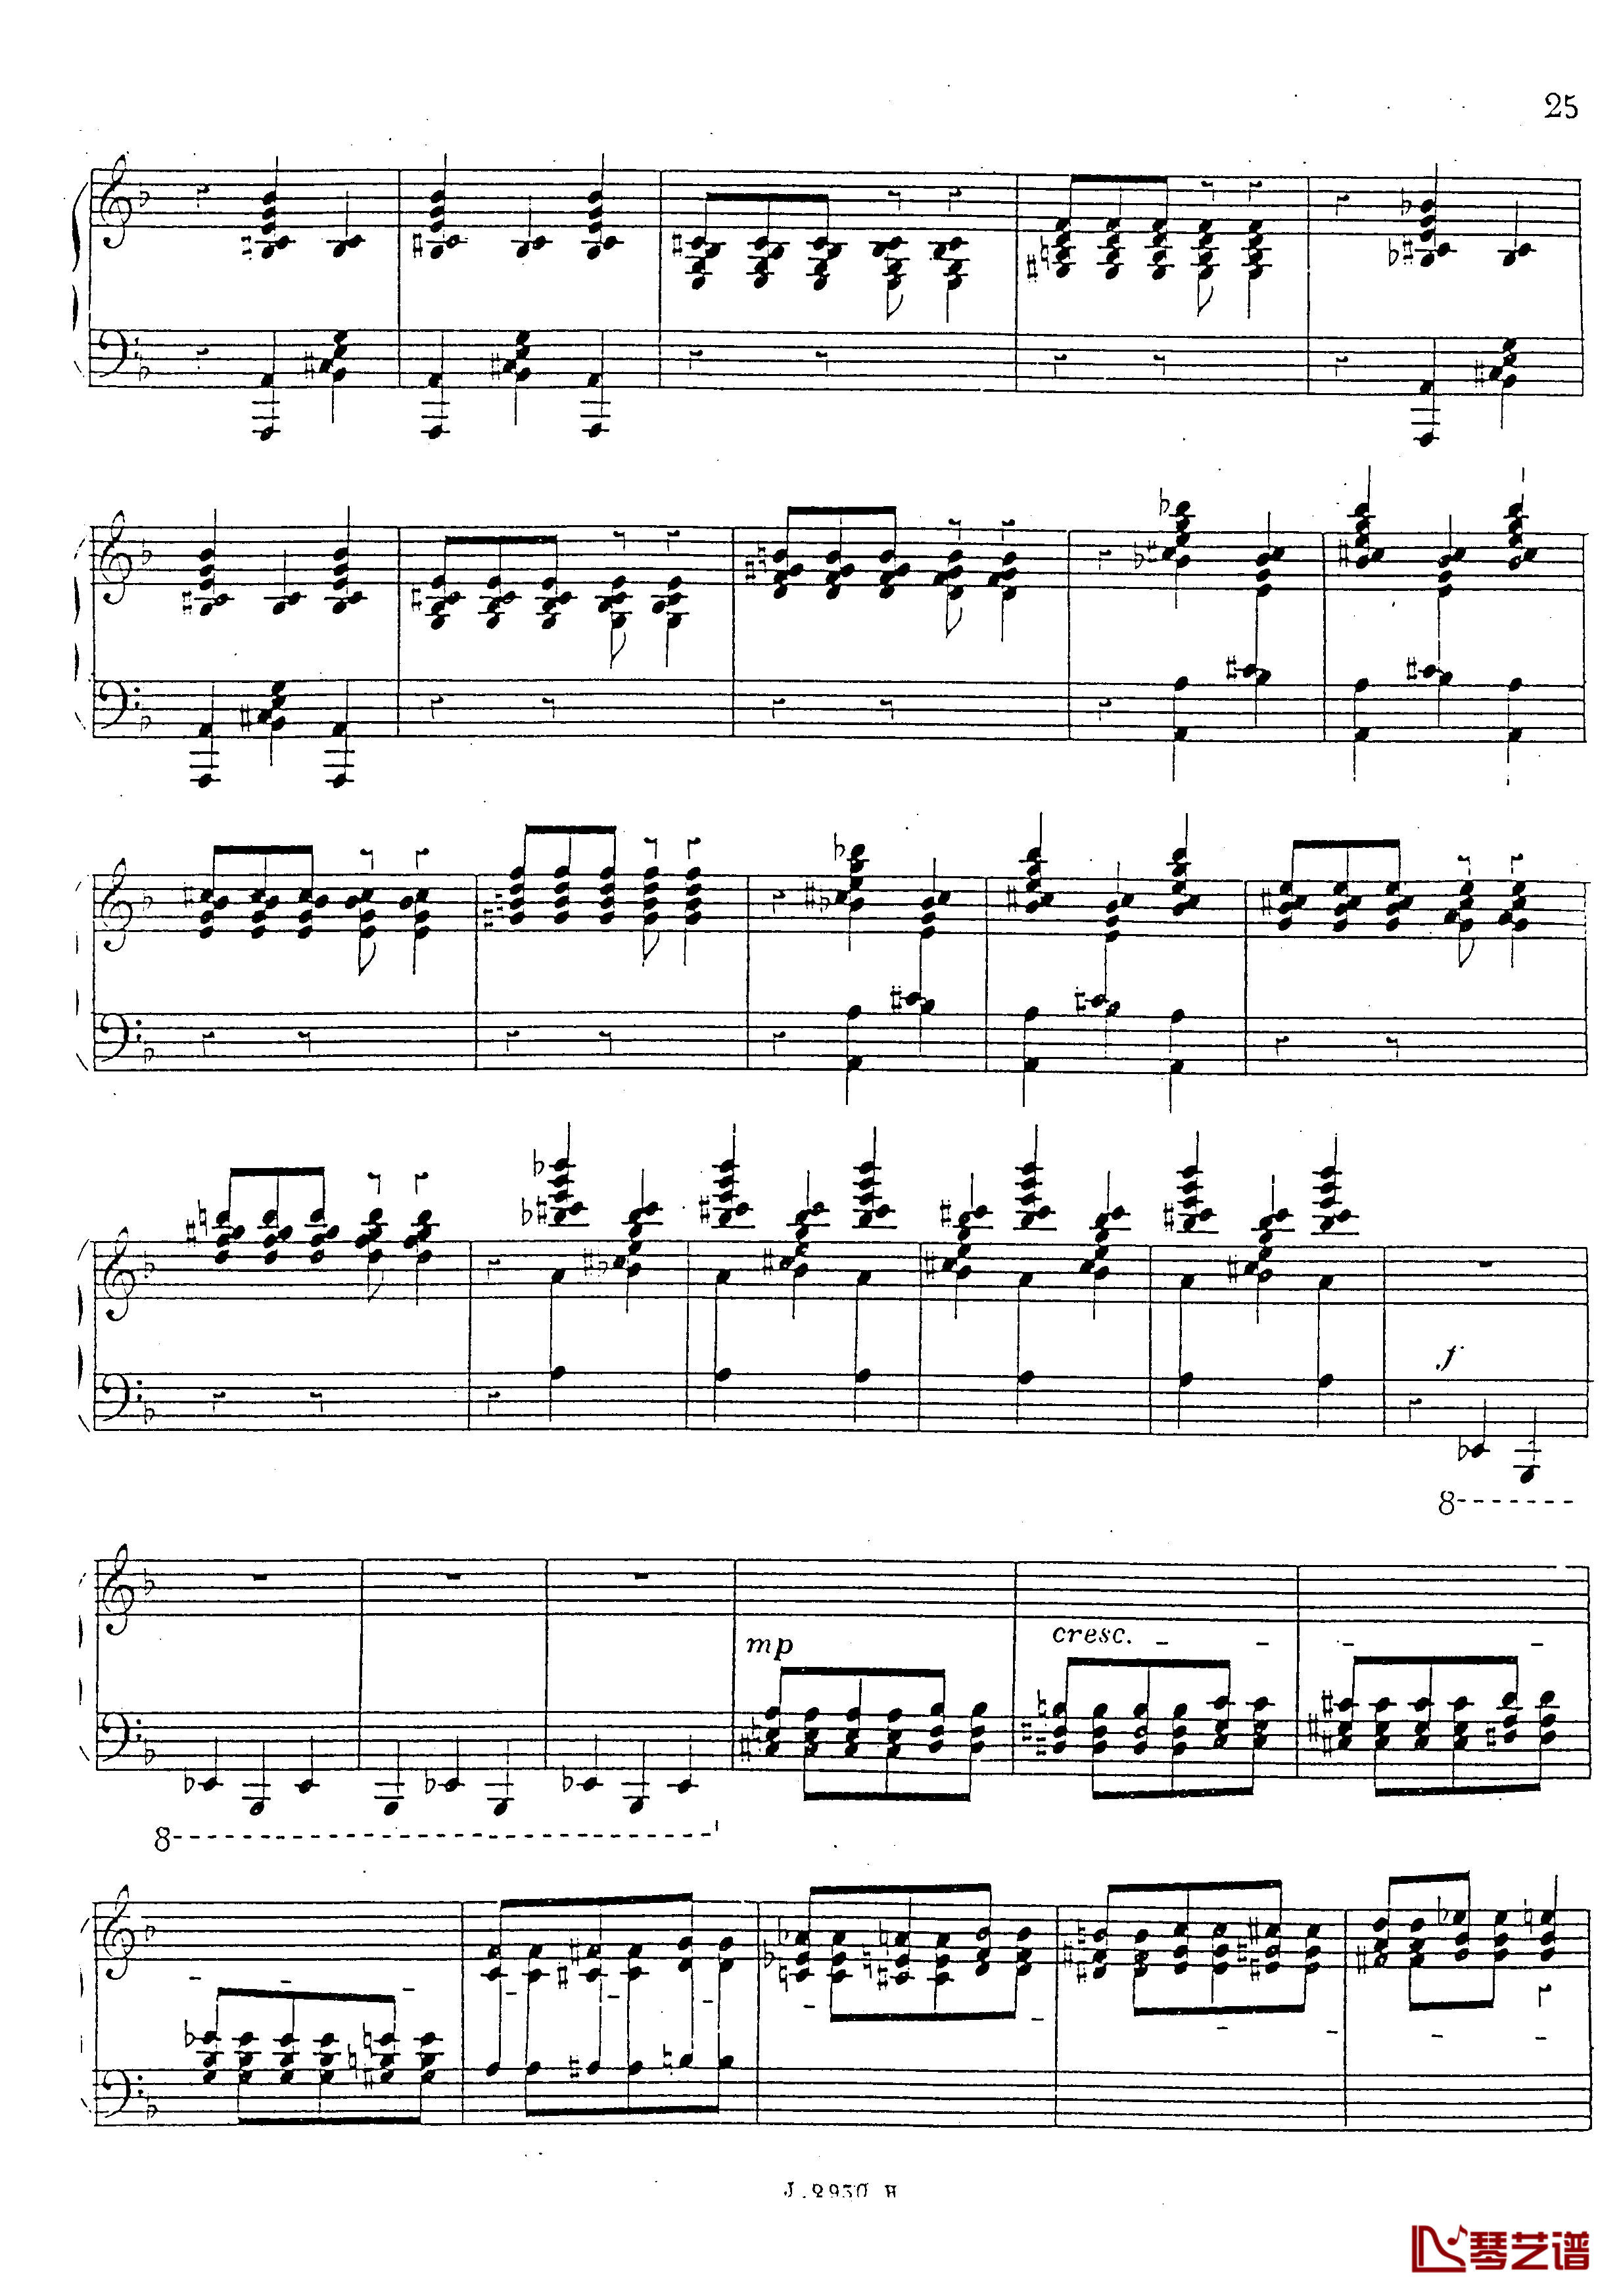 a小调第四钢琴奏鸣曲钢琴谱-安东 鲁宾斯坦- Op.10026